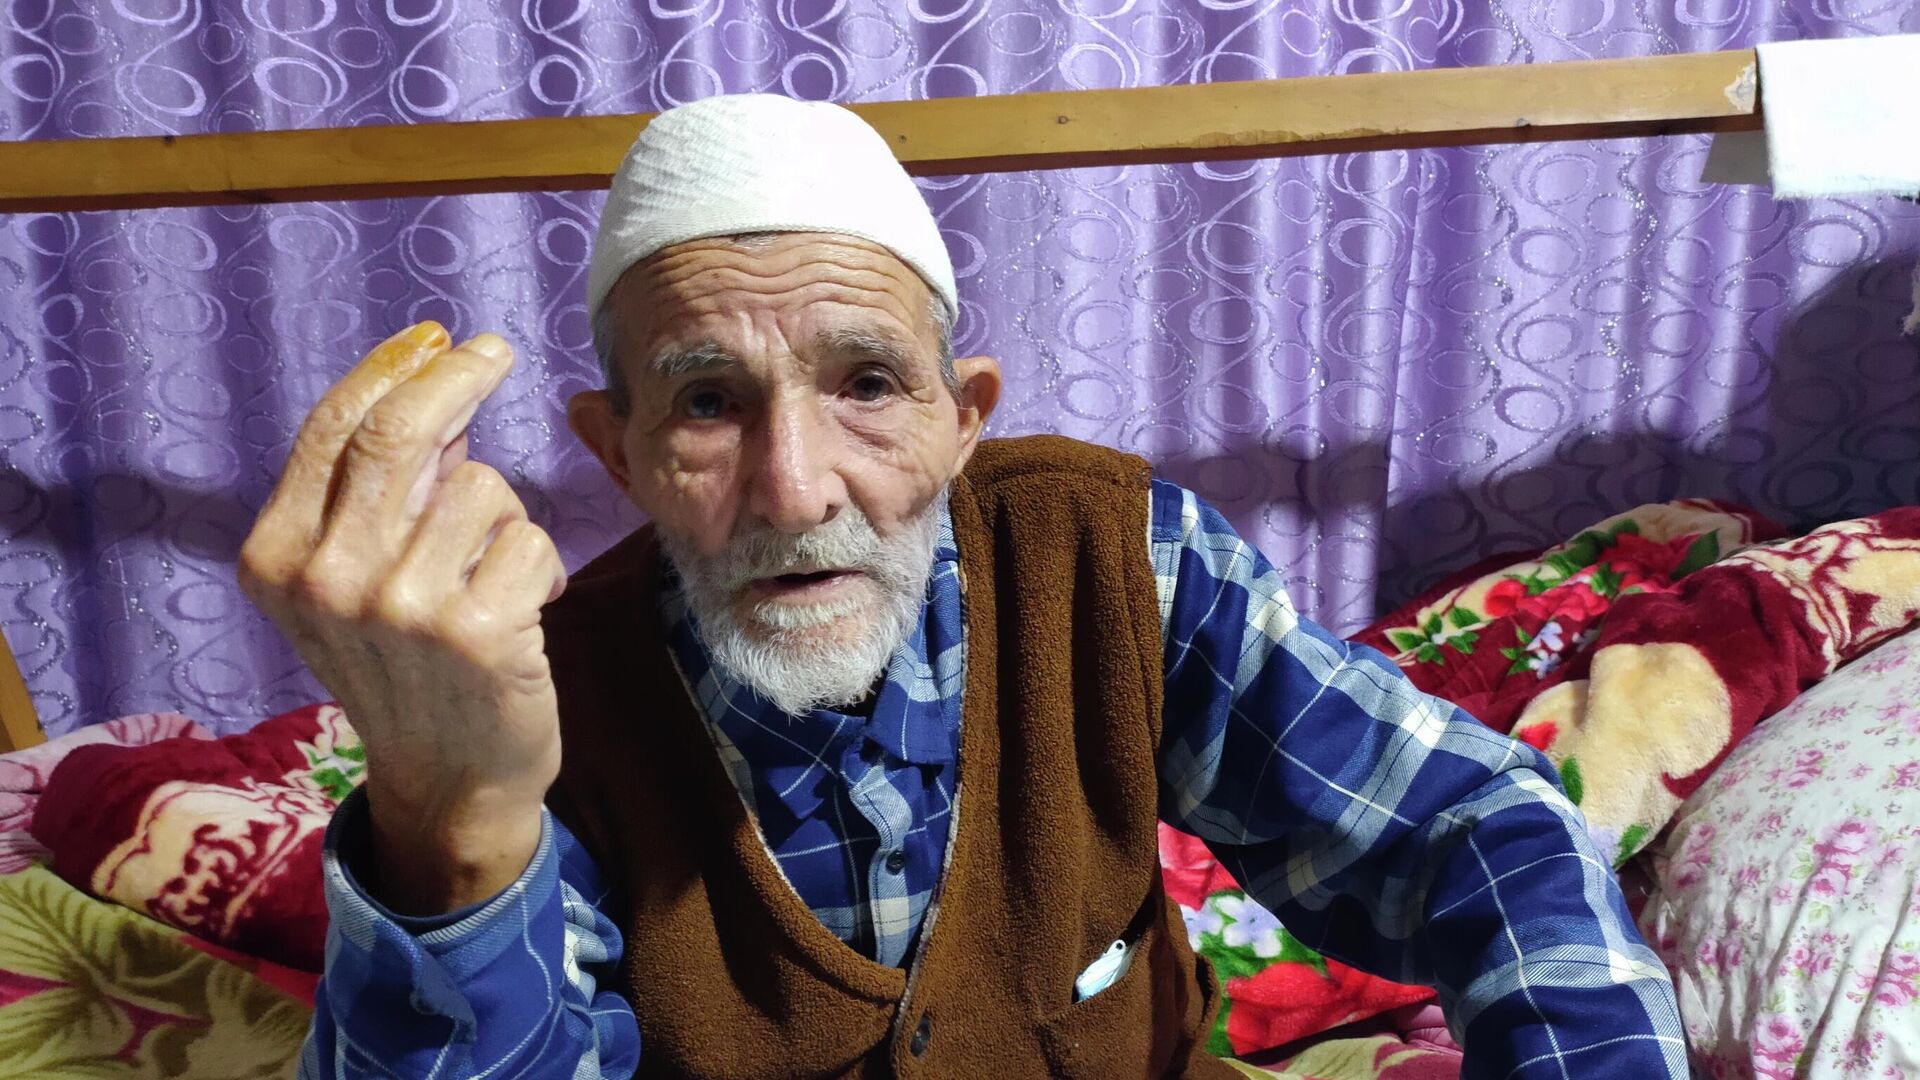 Göyçayın Ləkçıplaq kənd sakini 80 yaşlı Arif İsmayılov - Sputnik Azərbaycan, 1920, 26.10.2021